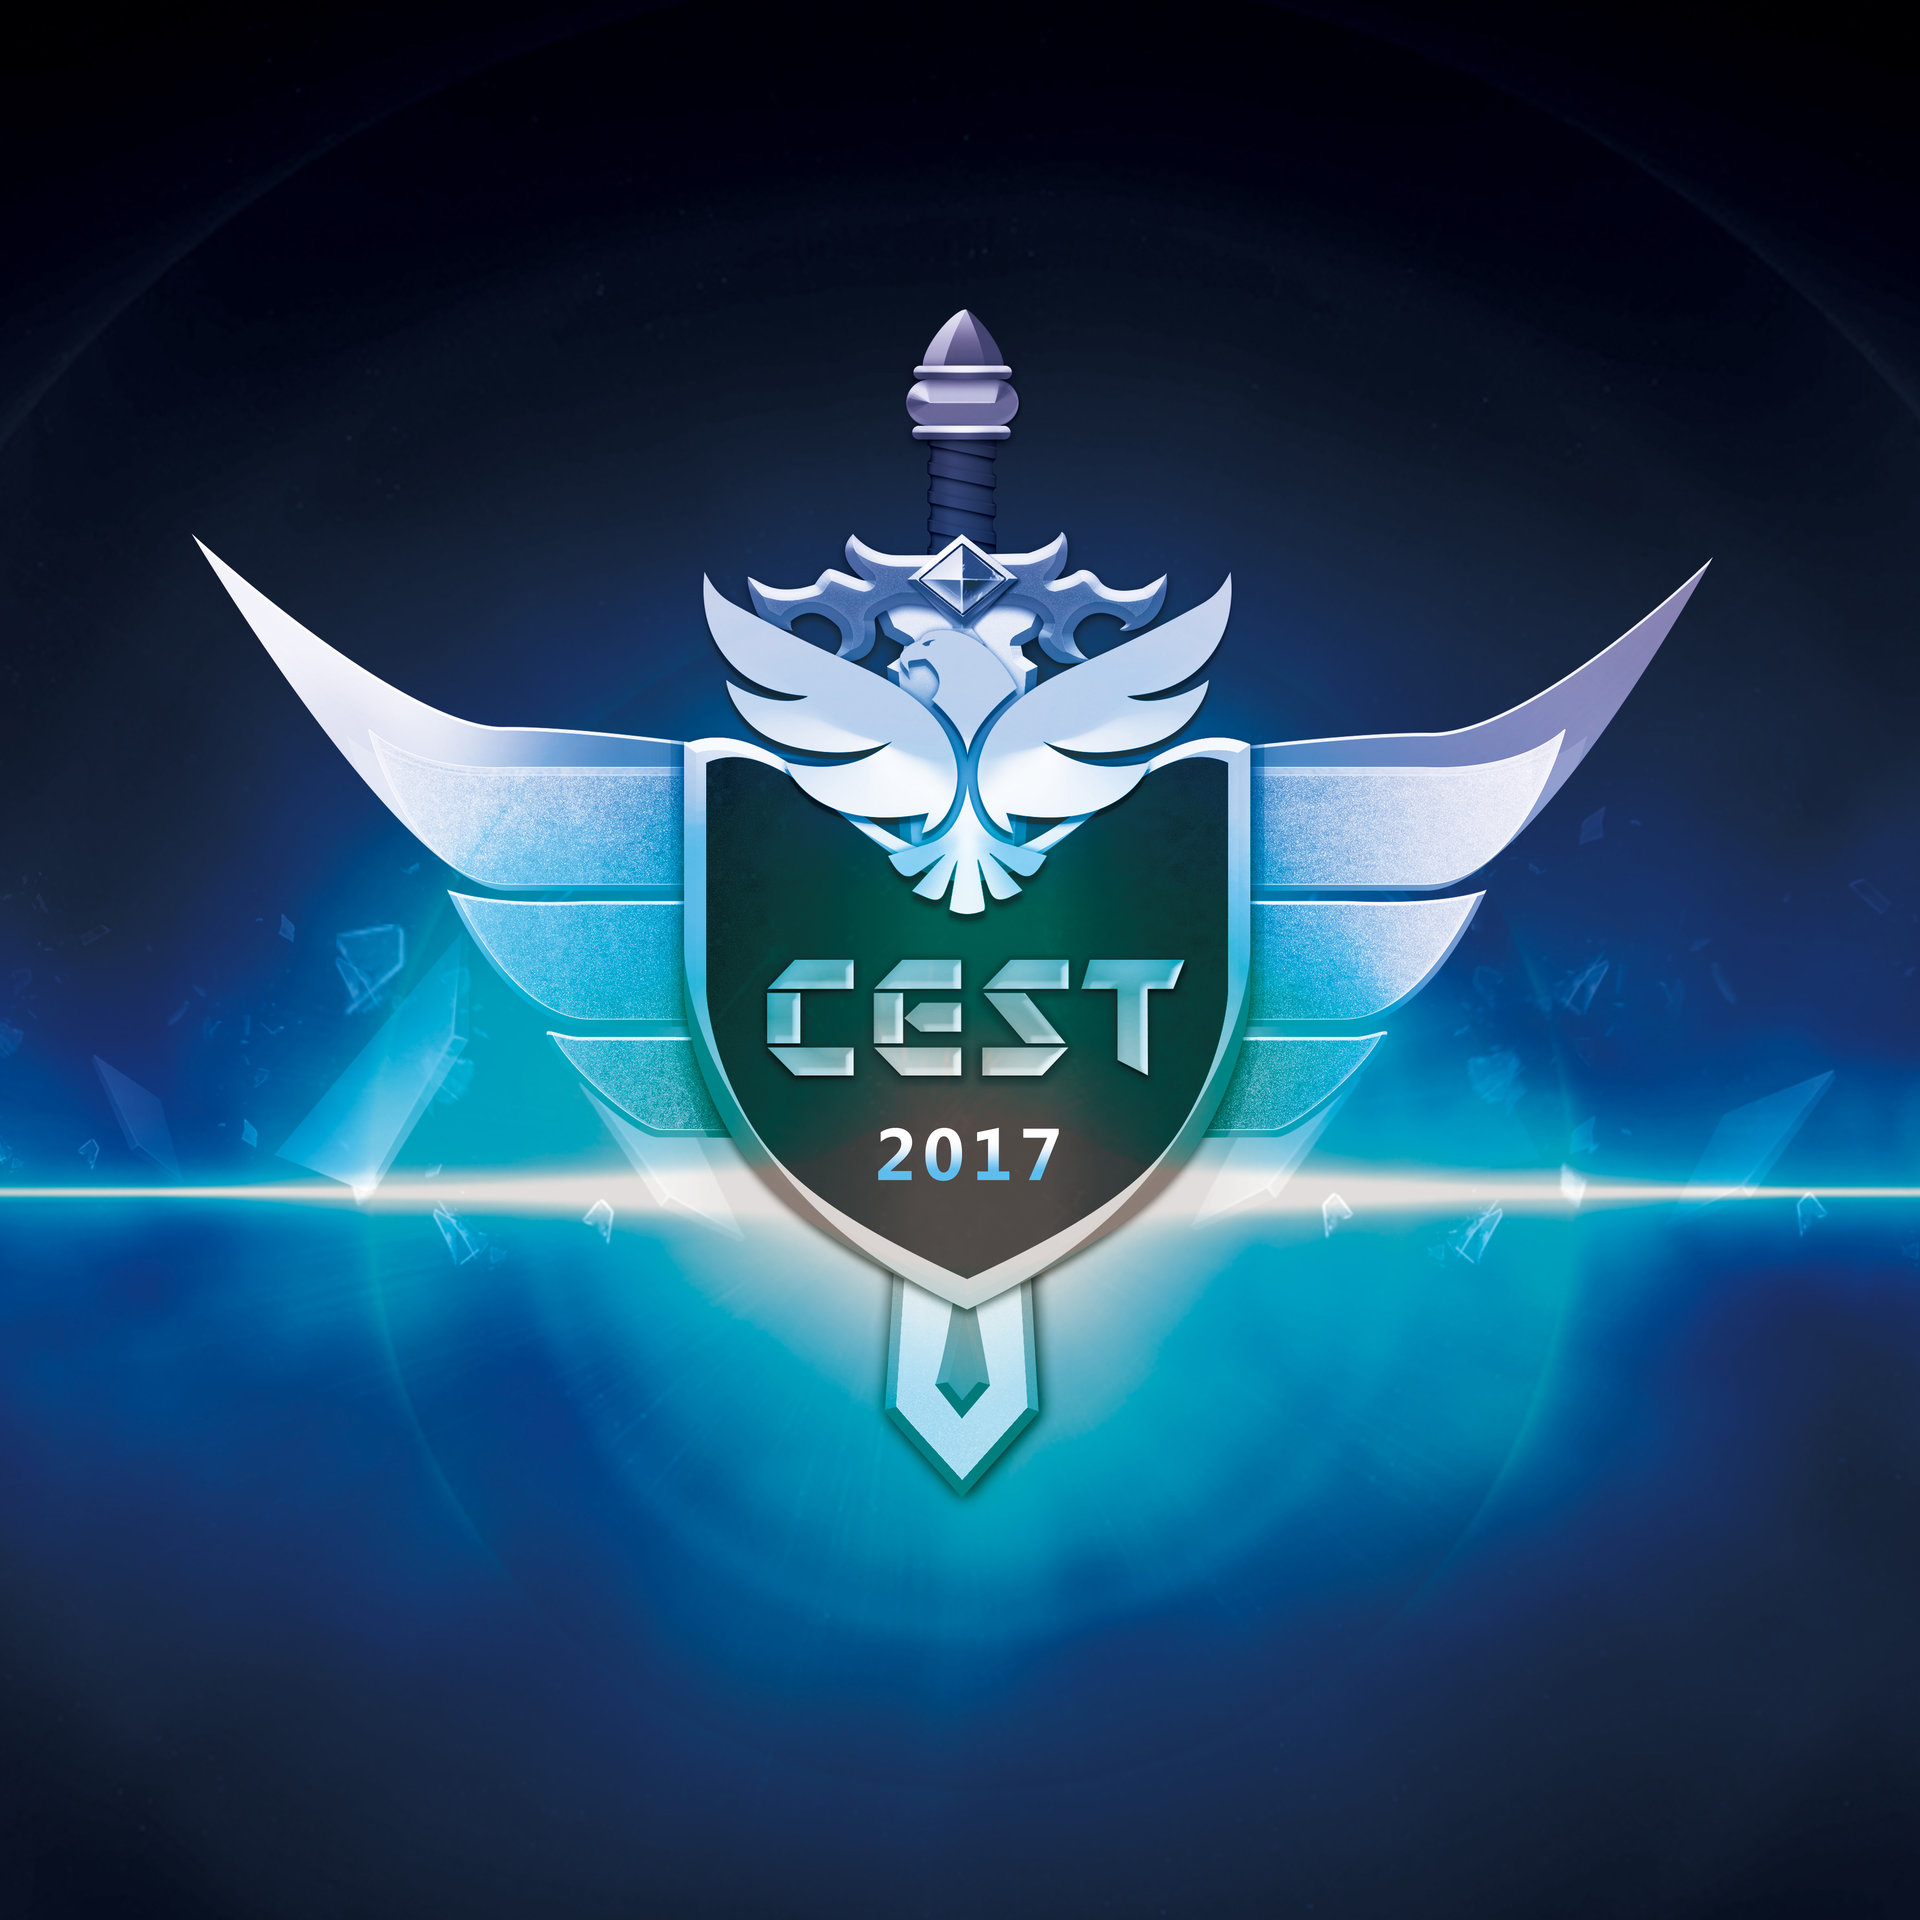 CEST2017